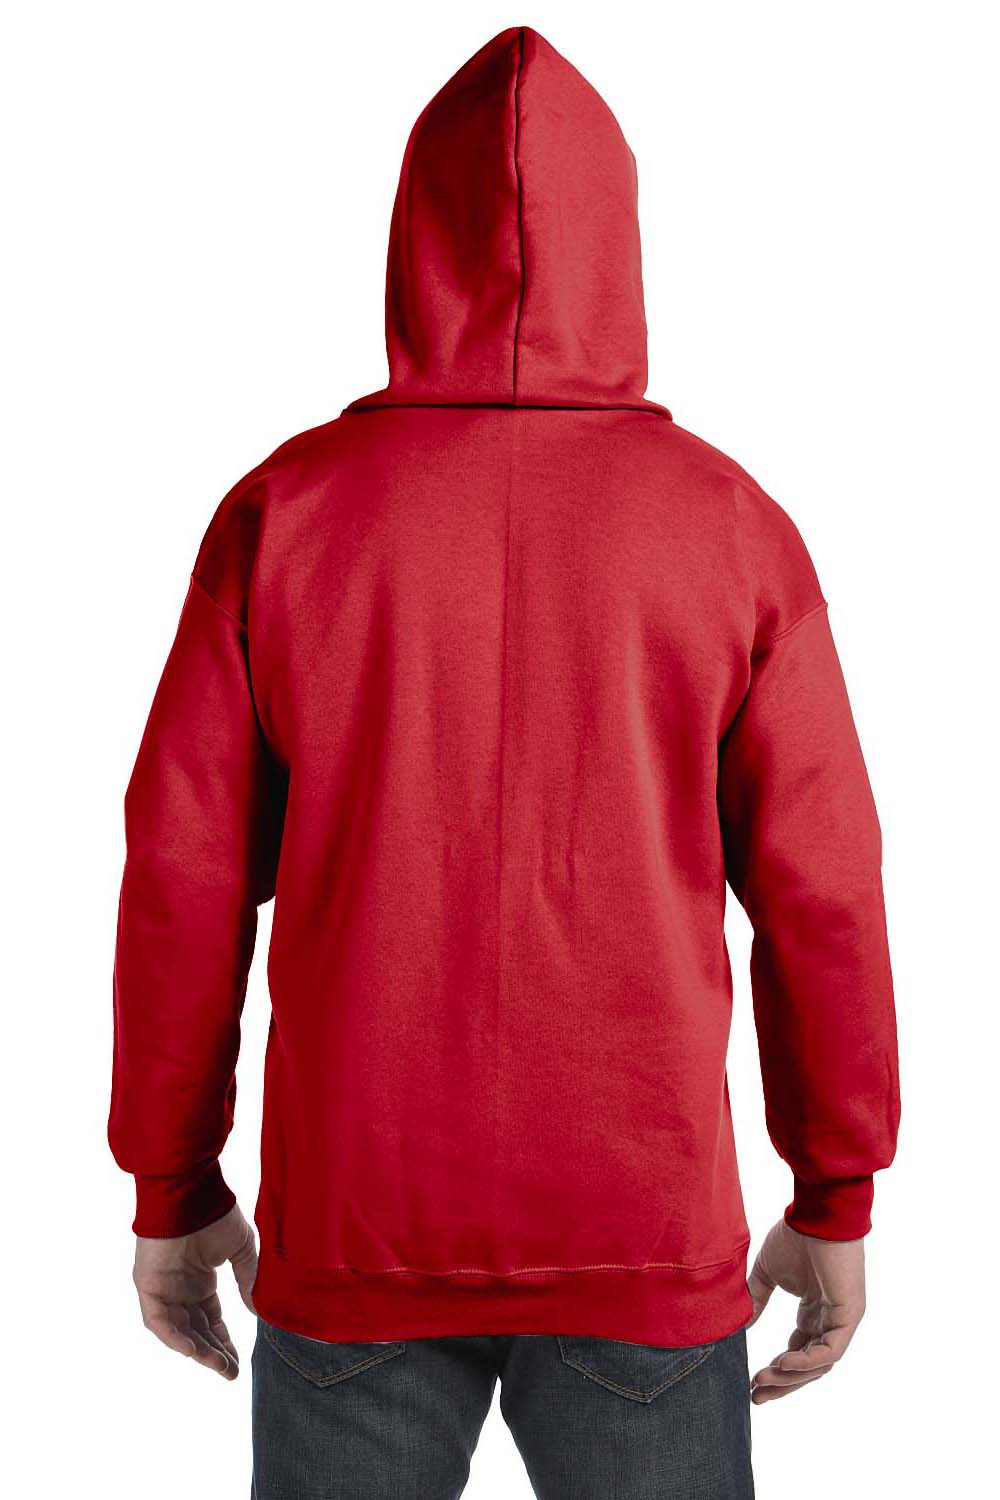 Hanes F280 Mens Ultimate Cotton PrintPro XP Full Zip Hooded Sweatshirt Hoodie Red Back